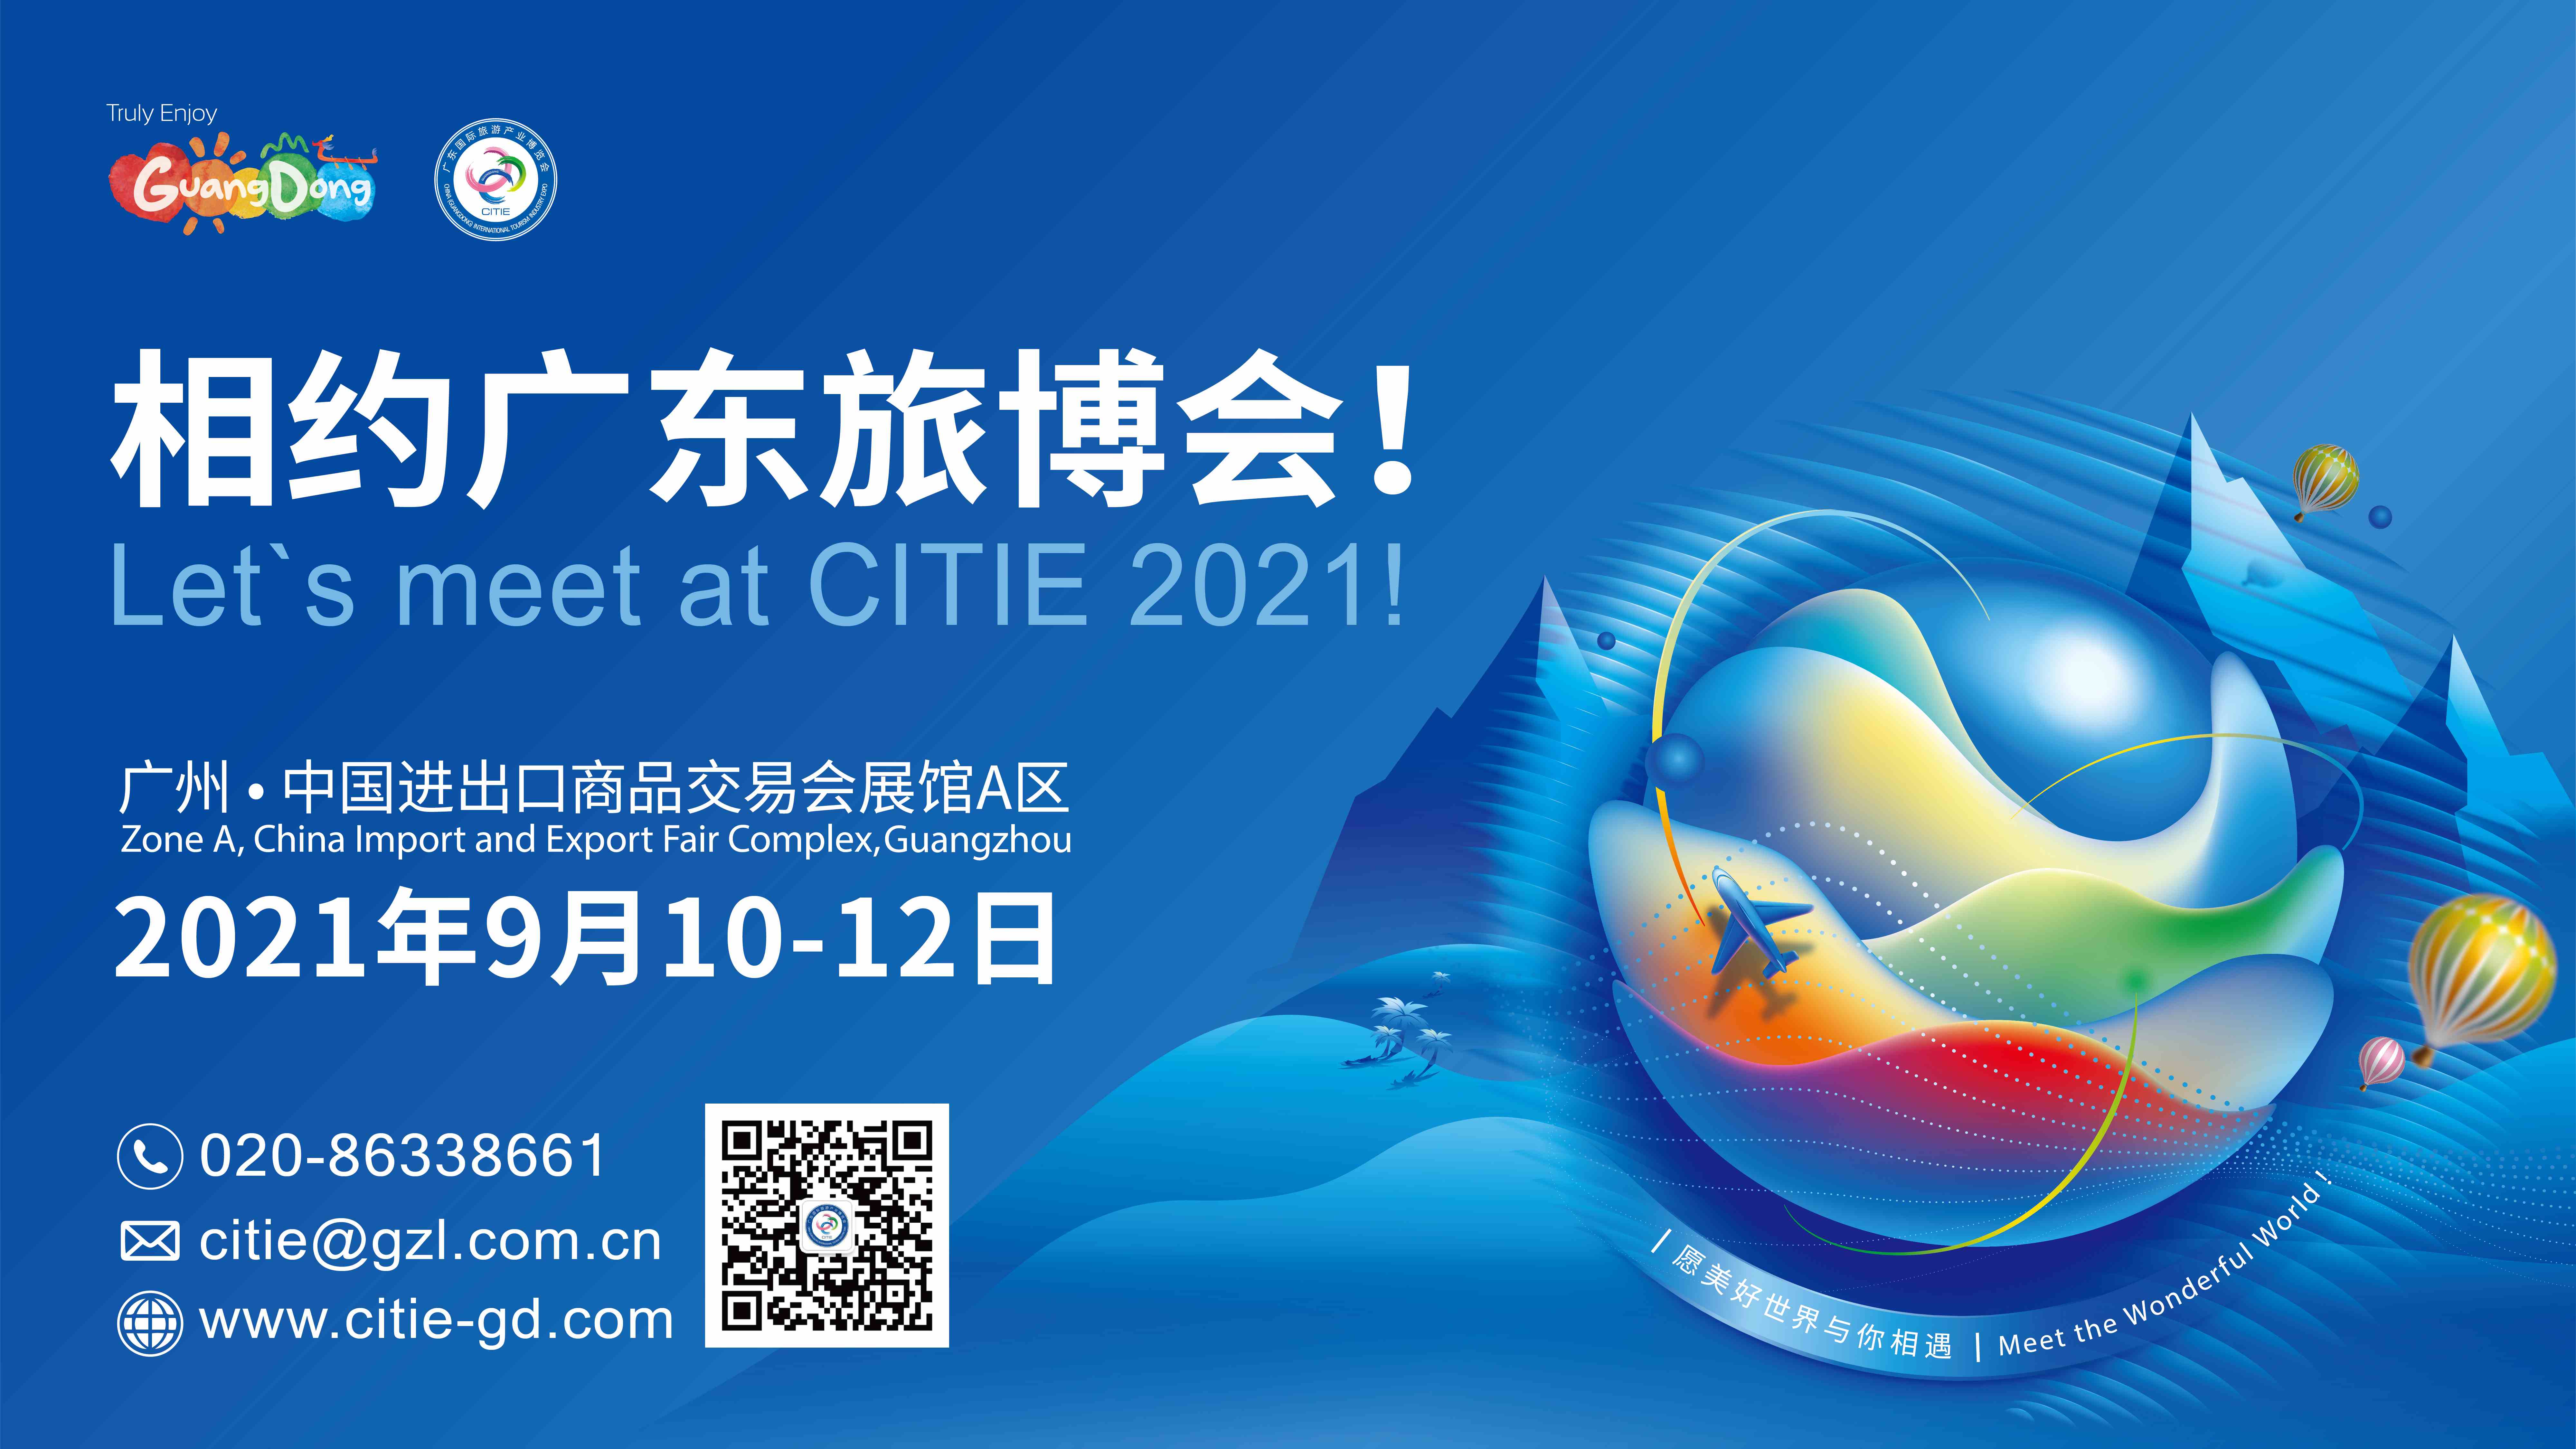 2021廣東旅博會9月10-12日在廣州舉行